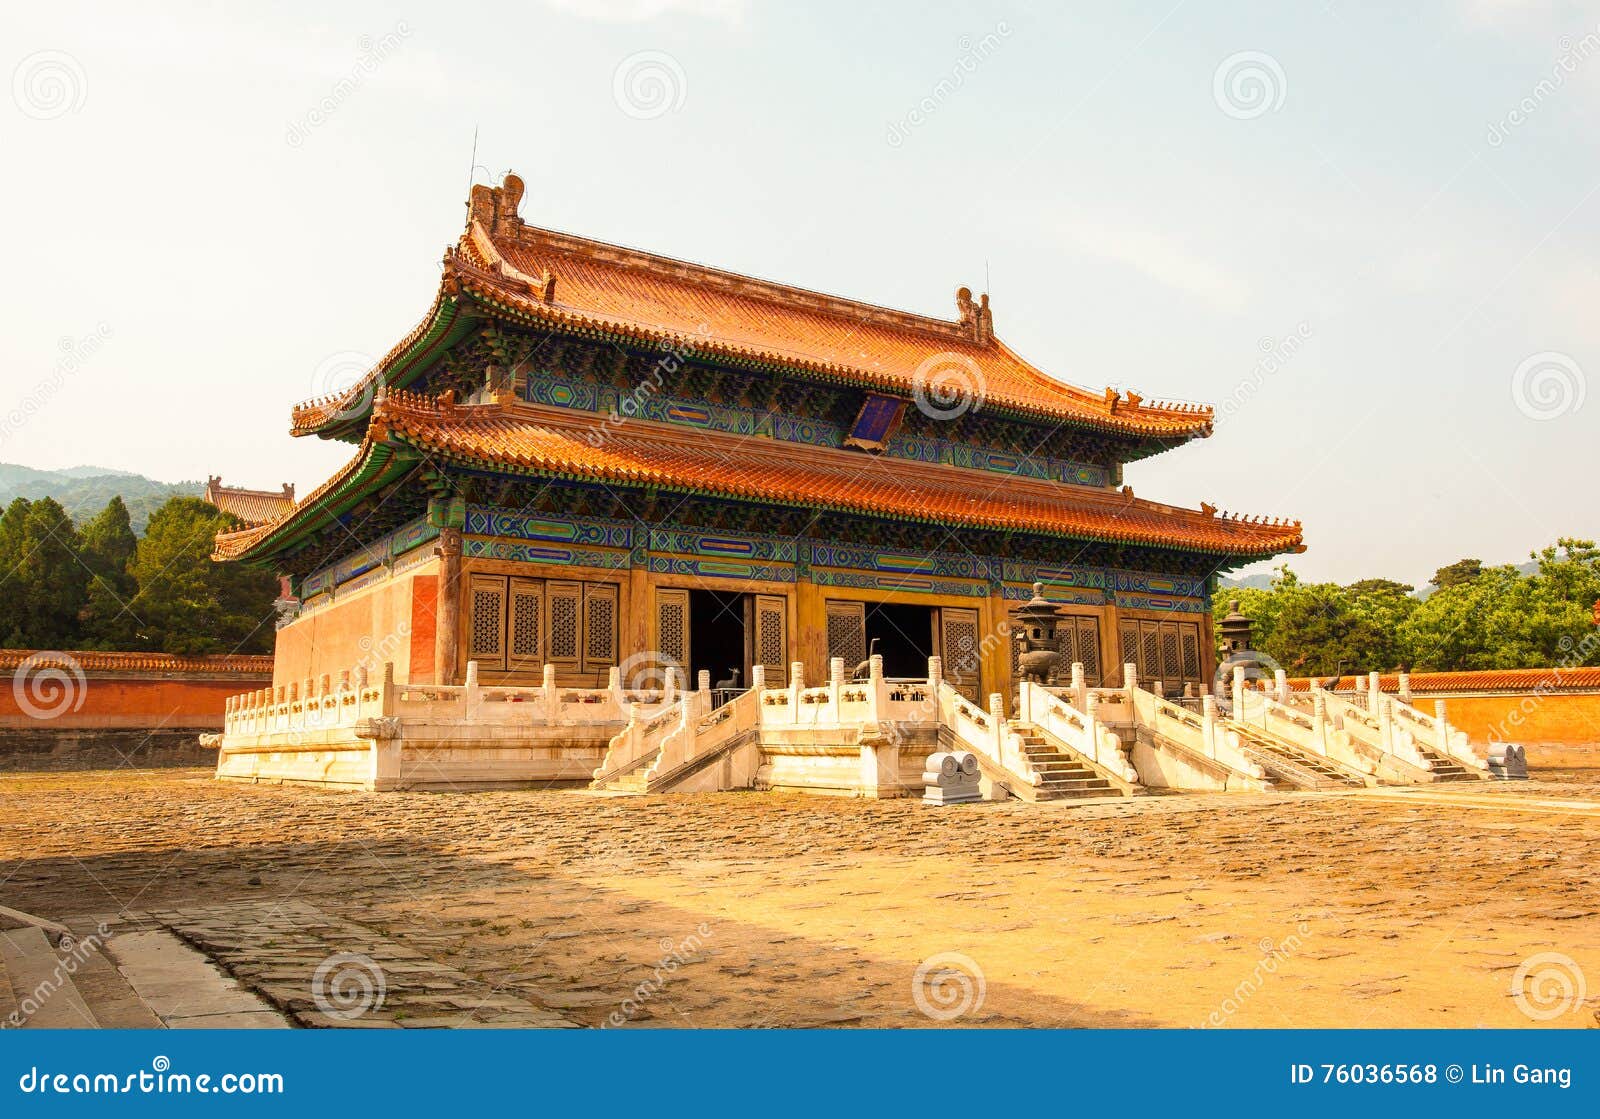 eastern qing mausoleums -xiao mausoleum(shun zhi)